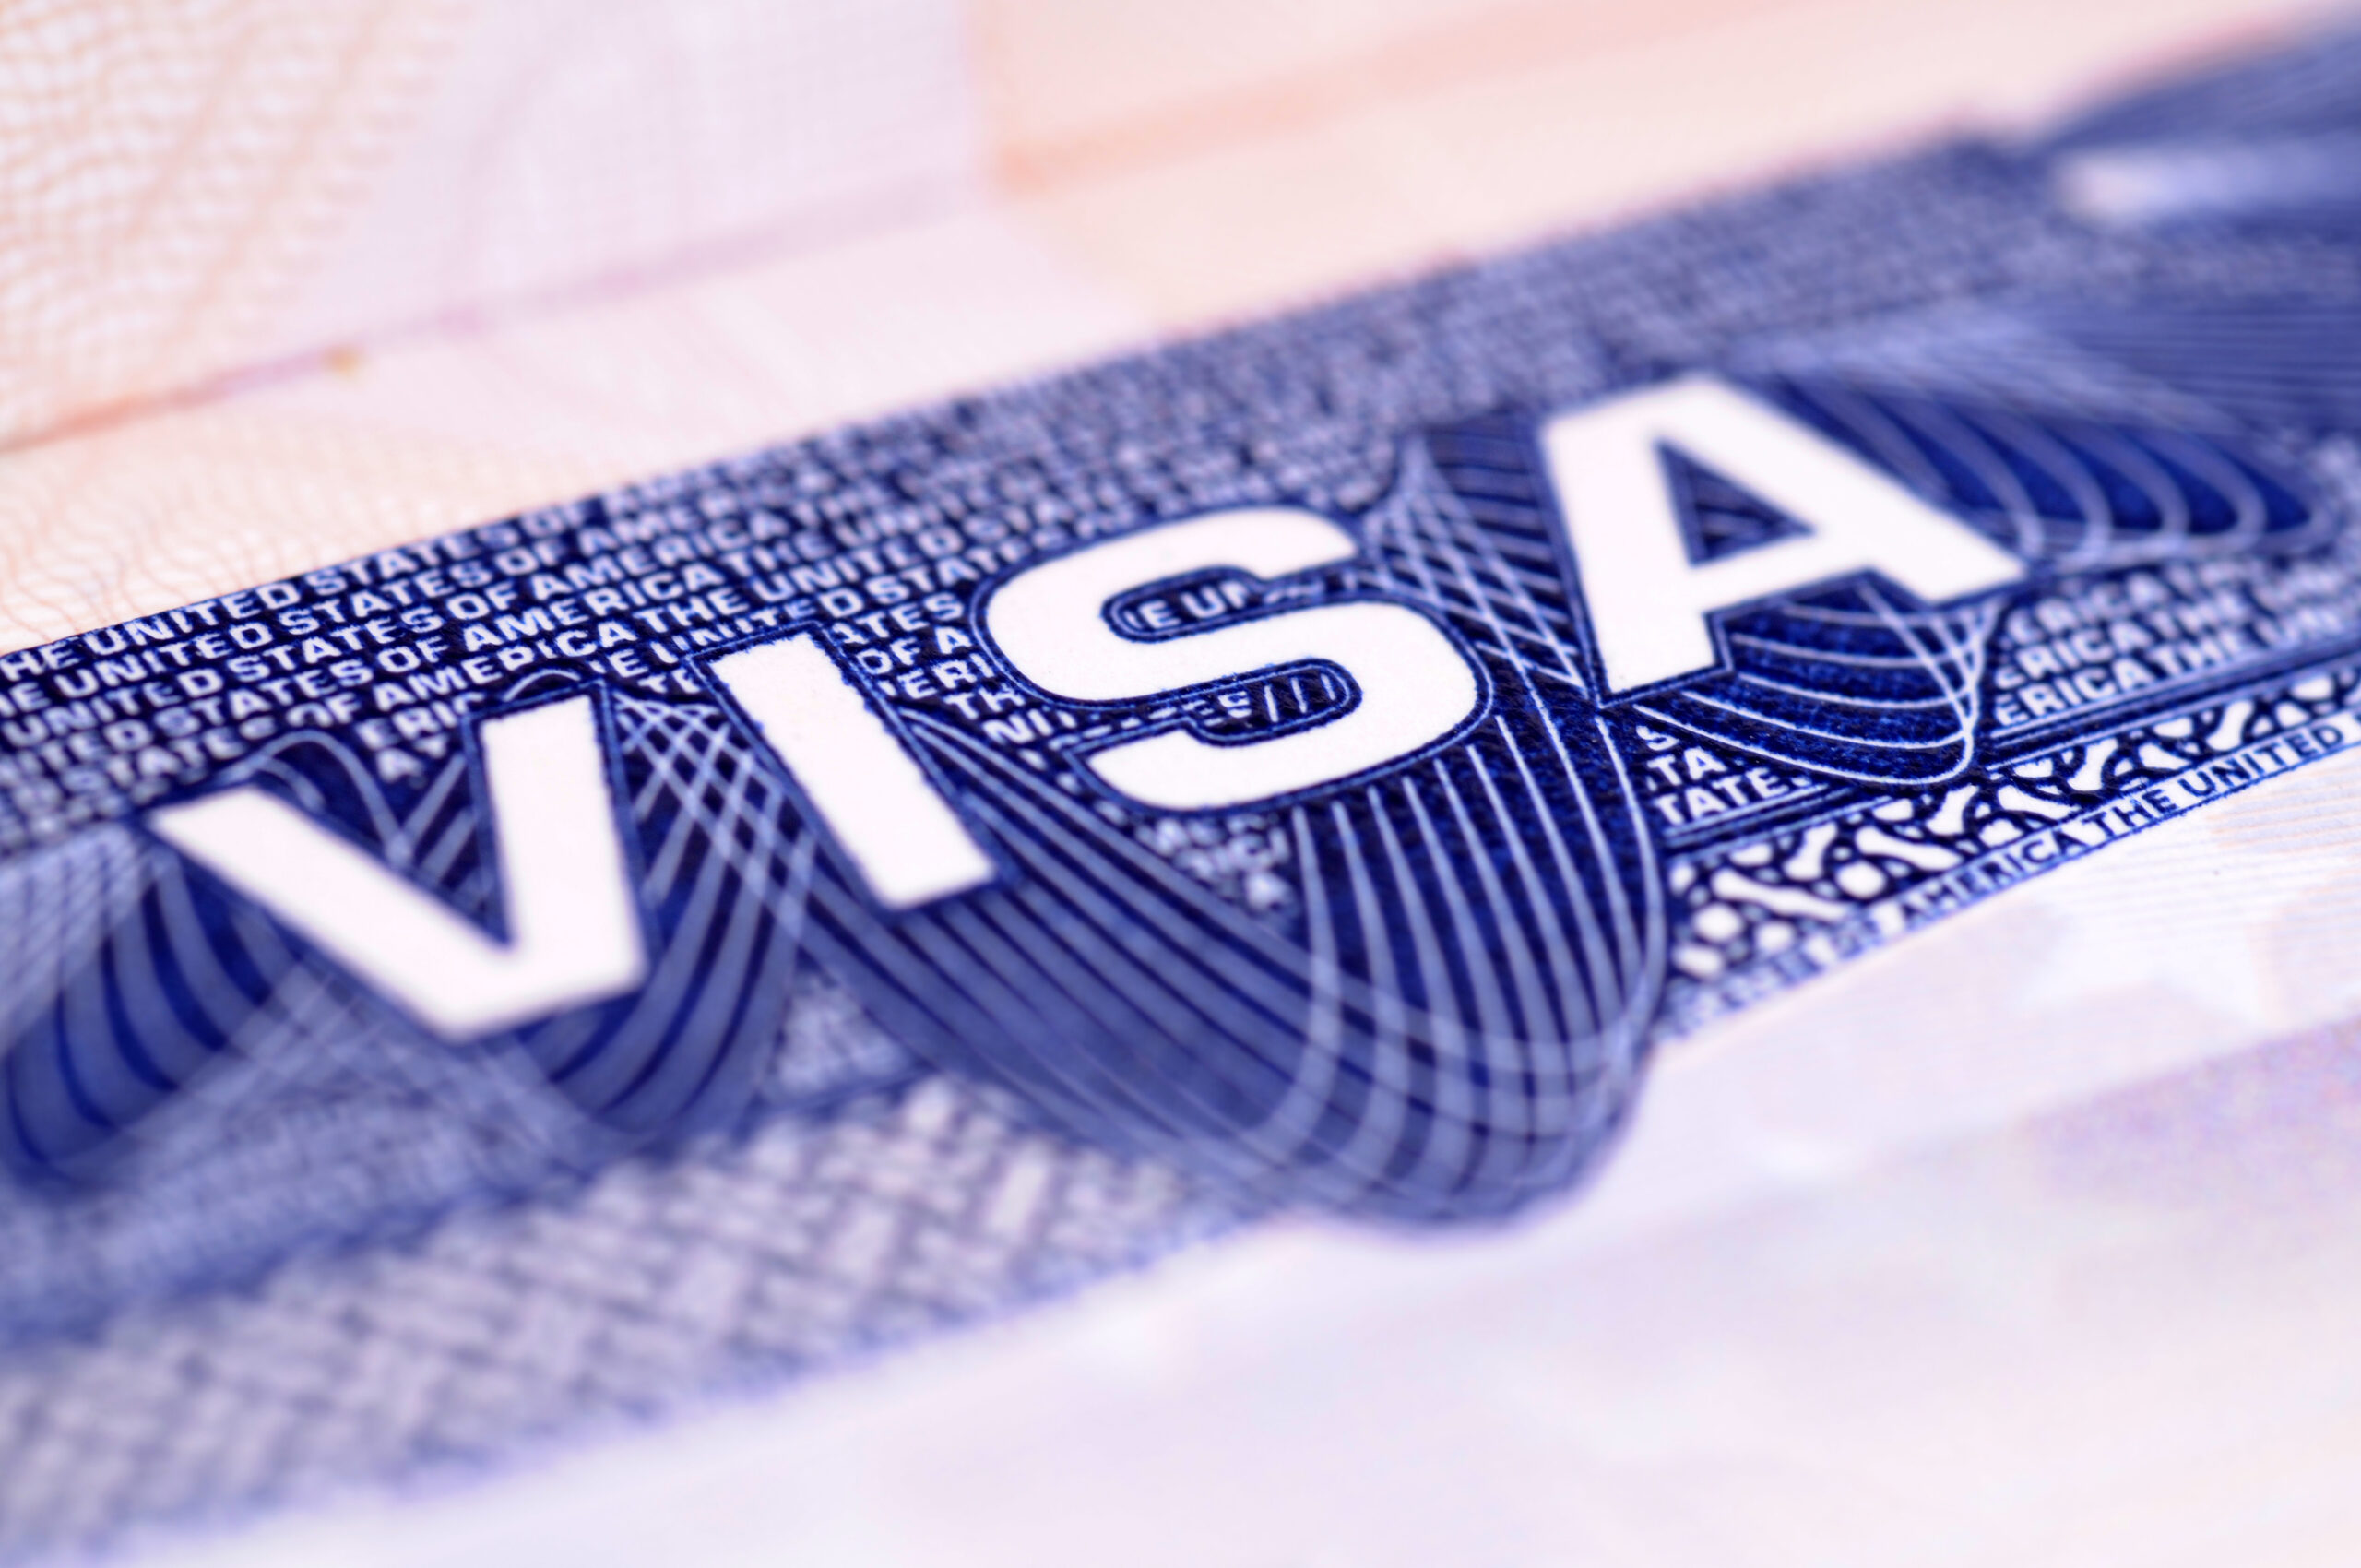 Cómo obtener una visa de turista para Estados Unidos desde Perú: Guía completa actualizada con requisitos y pasos importantes